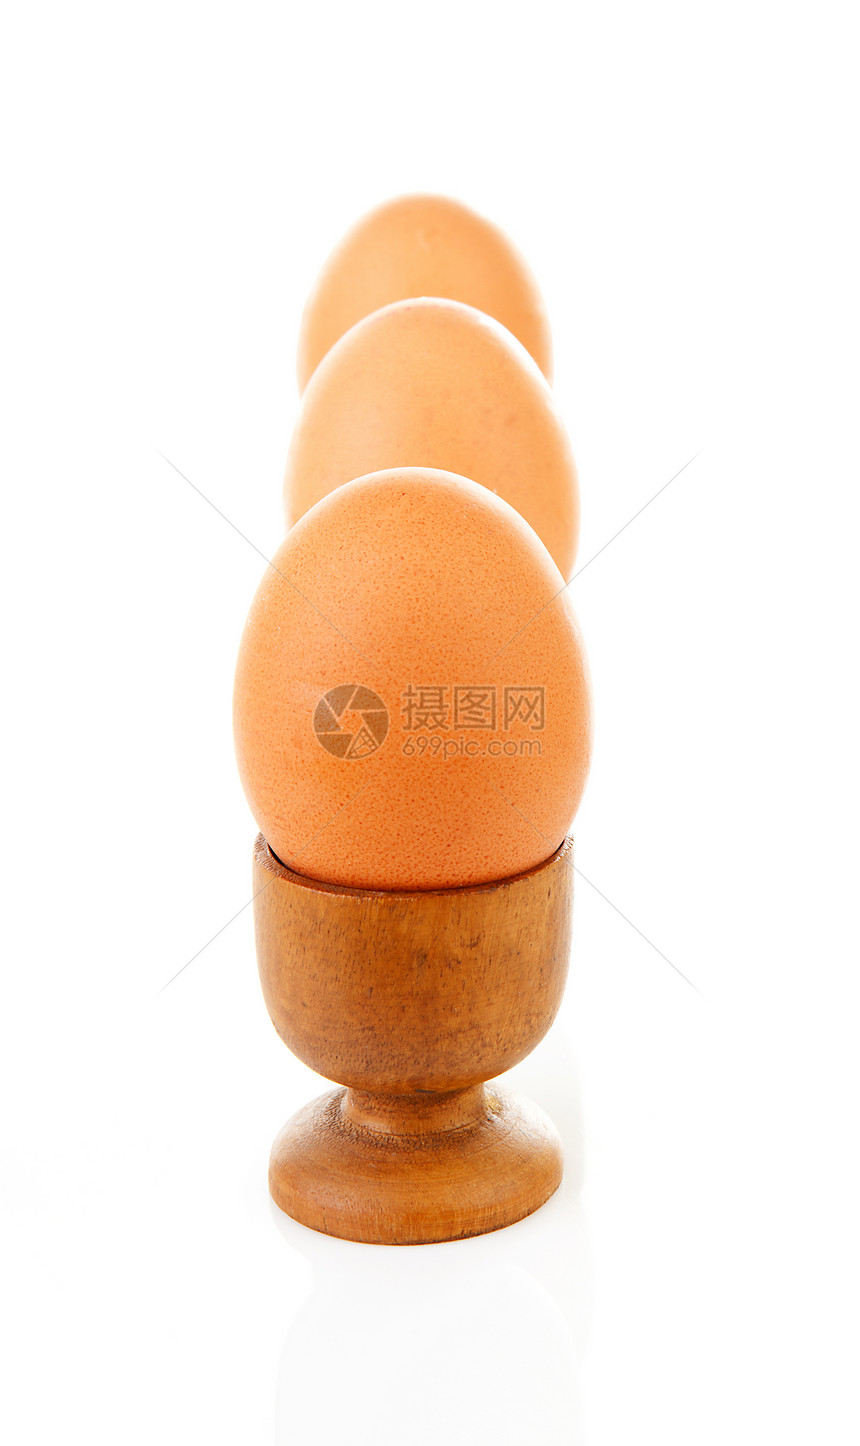 三只鸡蛋装在木袋里午餐棕色早餐蛋壳营养食物木头图片